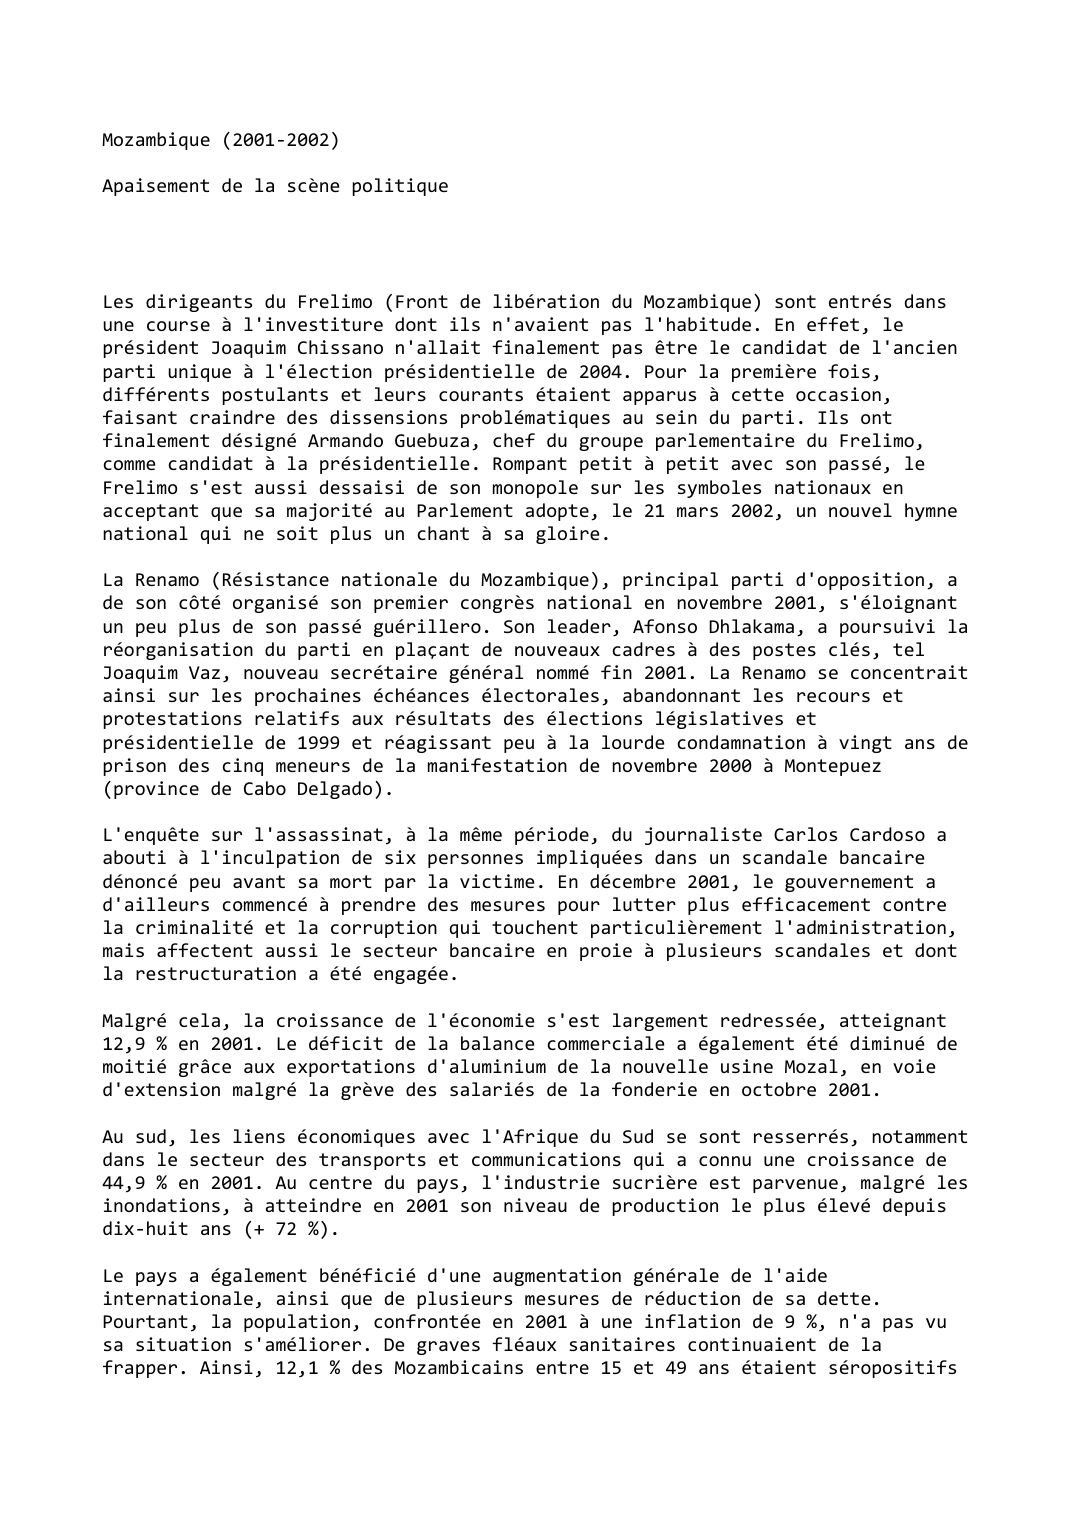 Prévisualisation du document Mozambique (2001-2002)

Apaisement de la scène politique